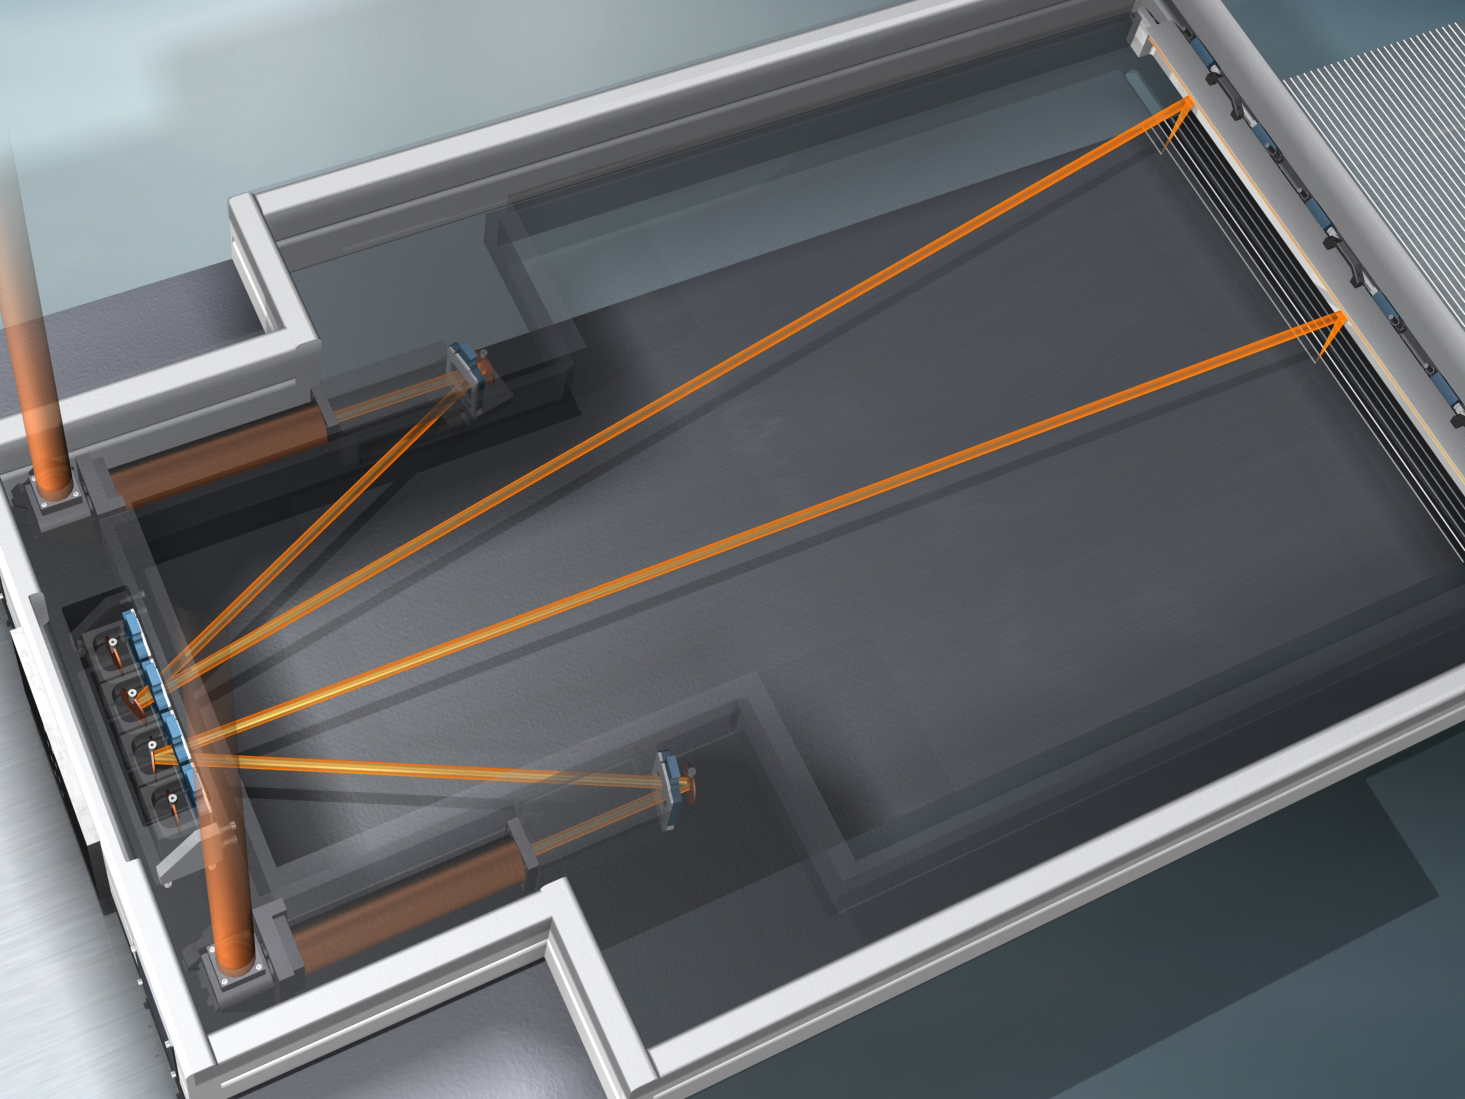 Prinzip des optischen Aufbaus (lasertronic® SAO x.x/6D) zur Laserbehandlung von kornorientiertem Elektroblech mittels zwei redundanter Strahlengänge (orange Linien = Laserstrahl)